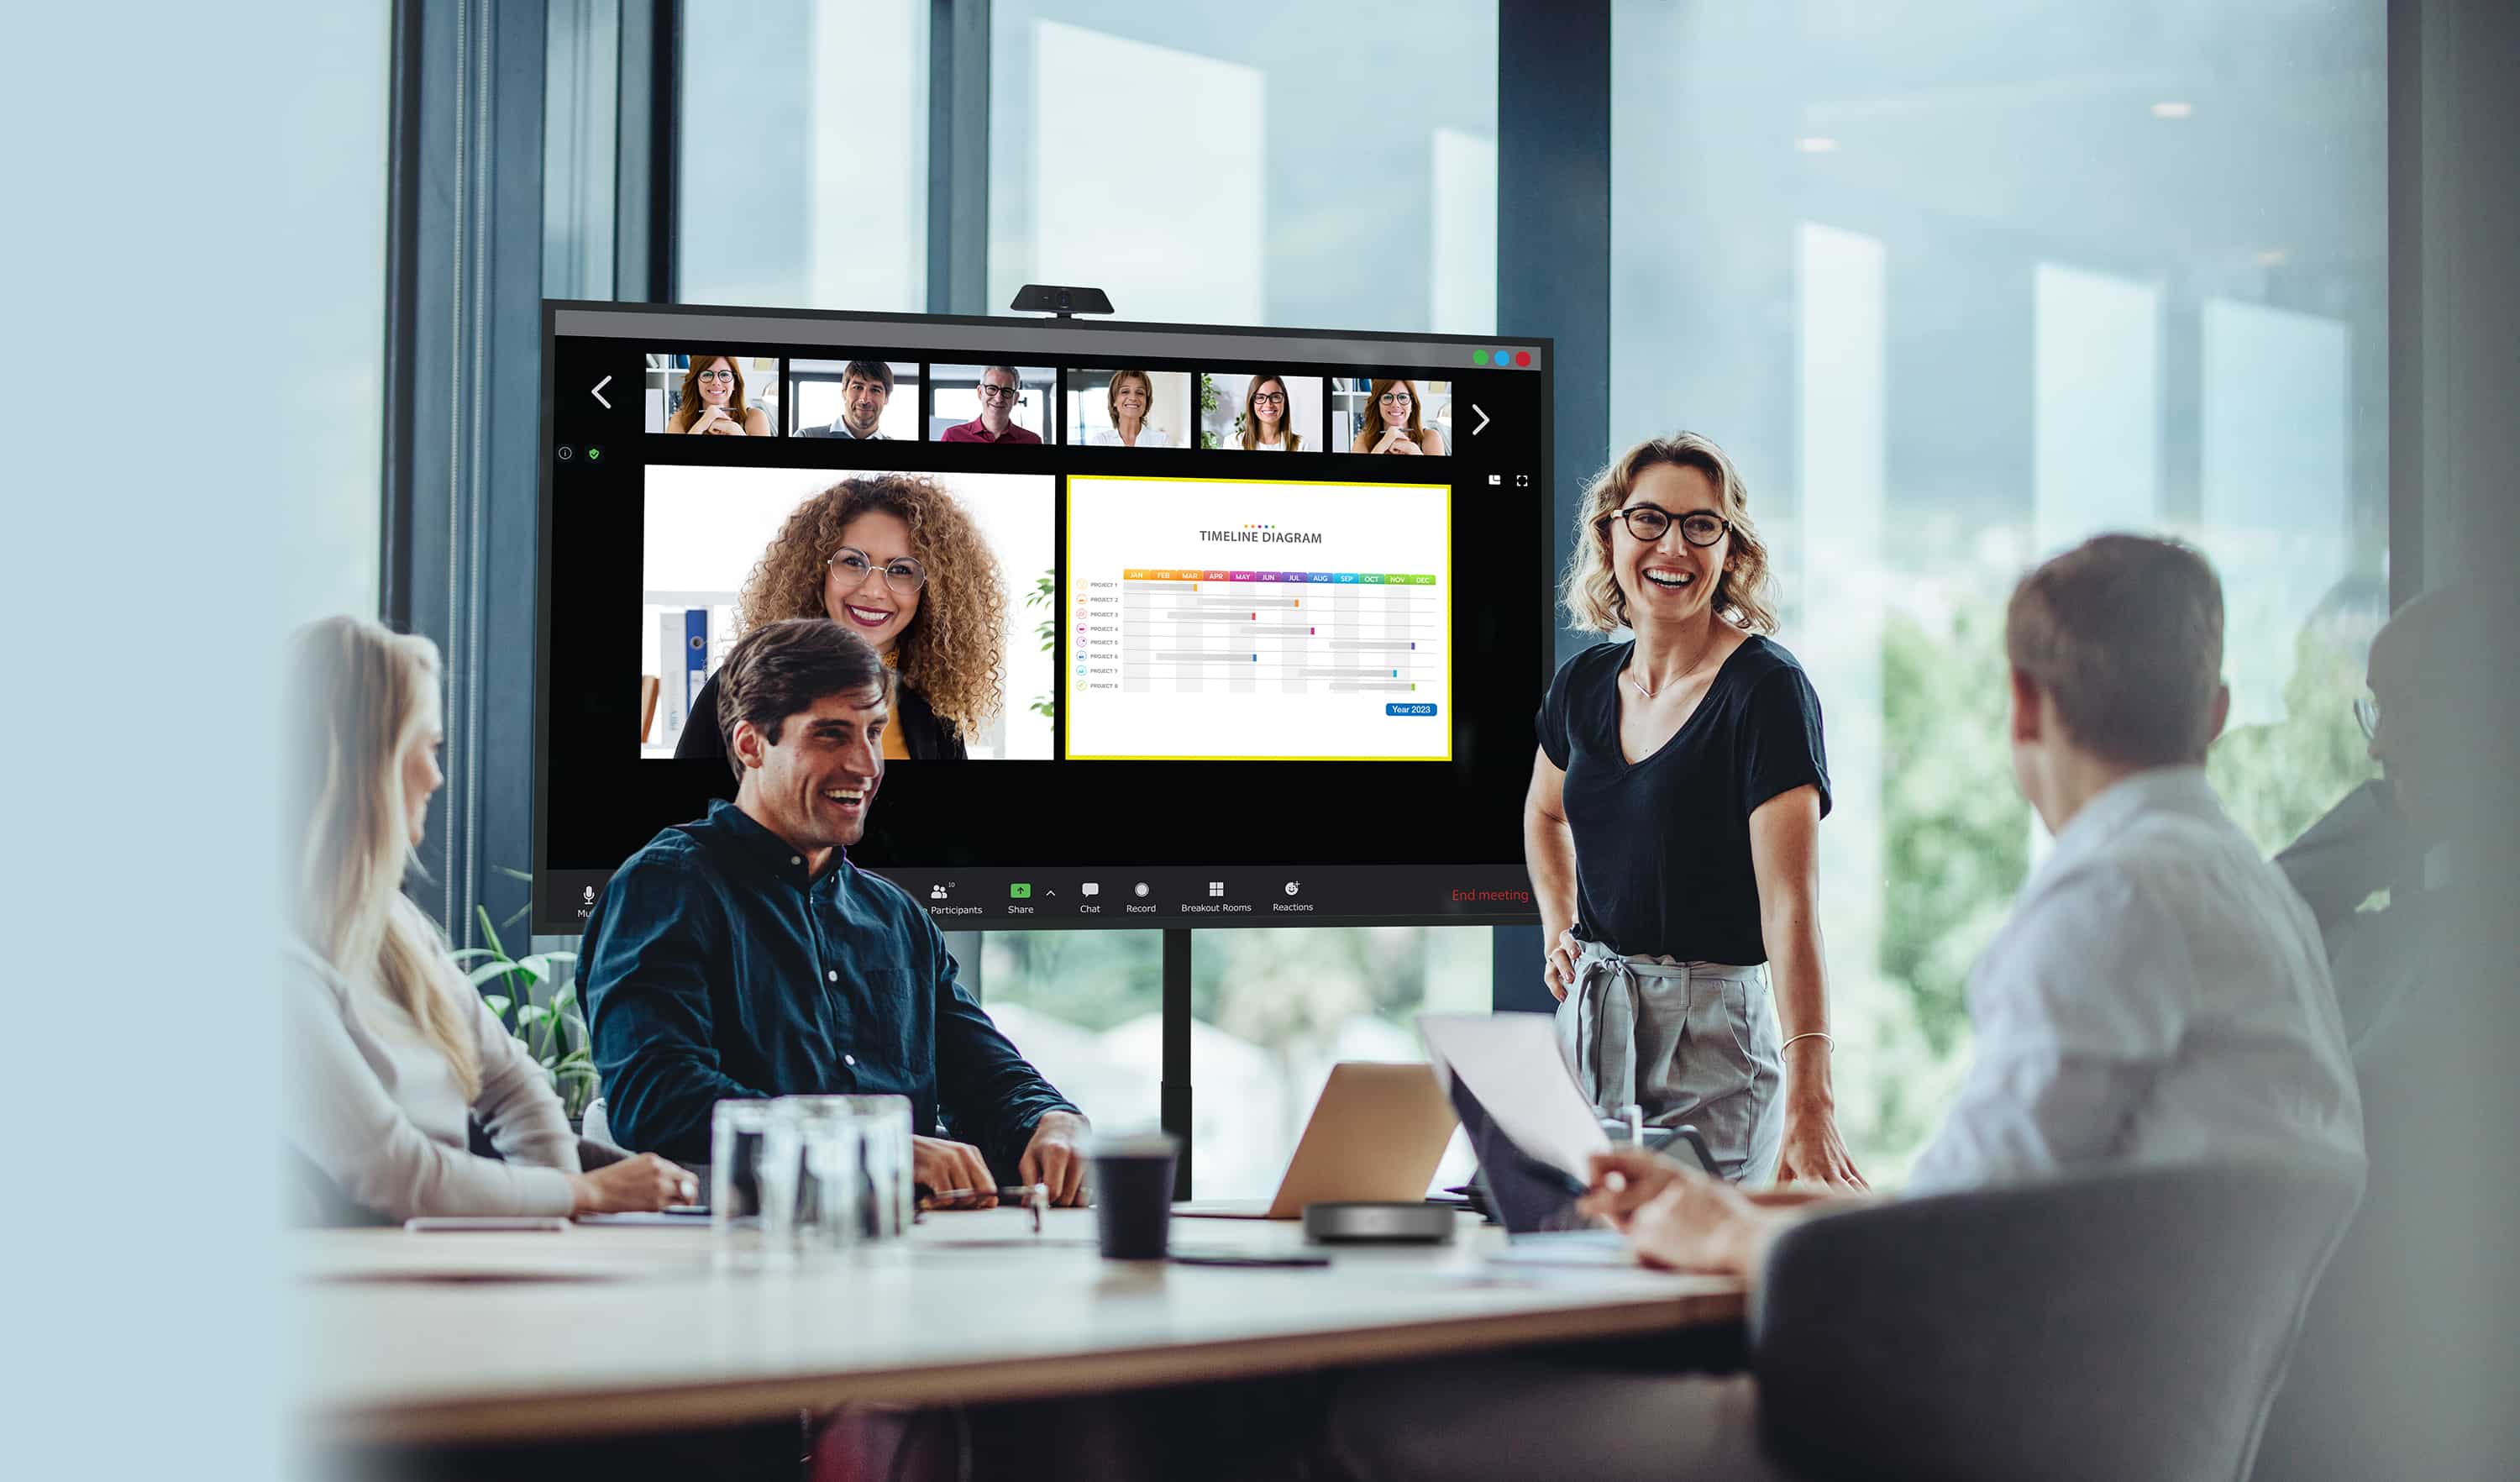 Geschäftsleute, die eine Besprechung durchführen, bei der einige Mitarbeiter physisch anwesend sind, schauen auf ein Display der Optoma N-Serie, während ihre externen Kollegen auf dem Bildschirm neben den Inhalten, die sie teilen, angezeigt werden.